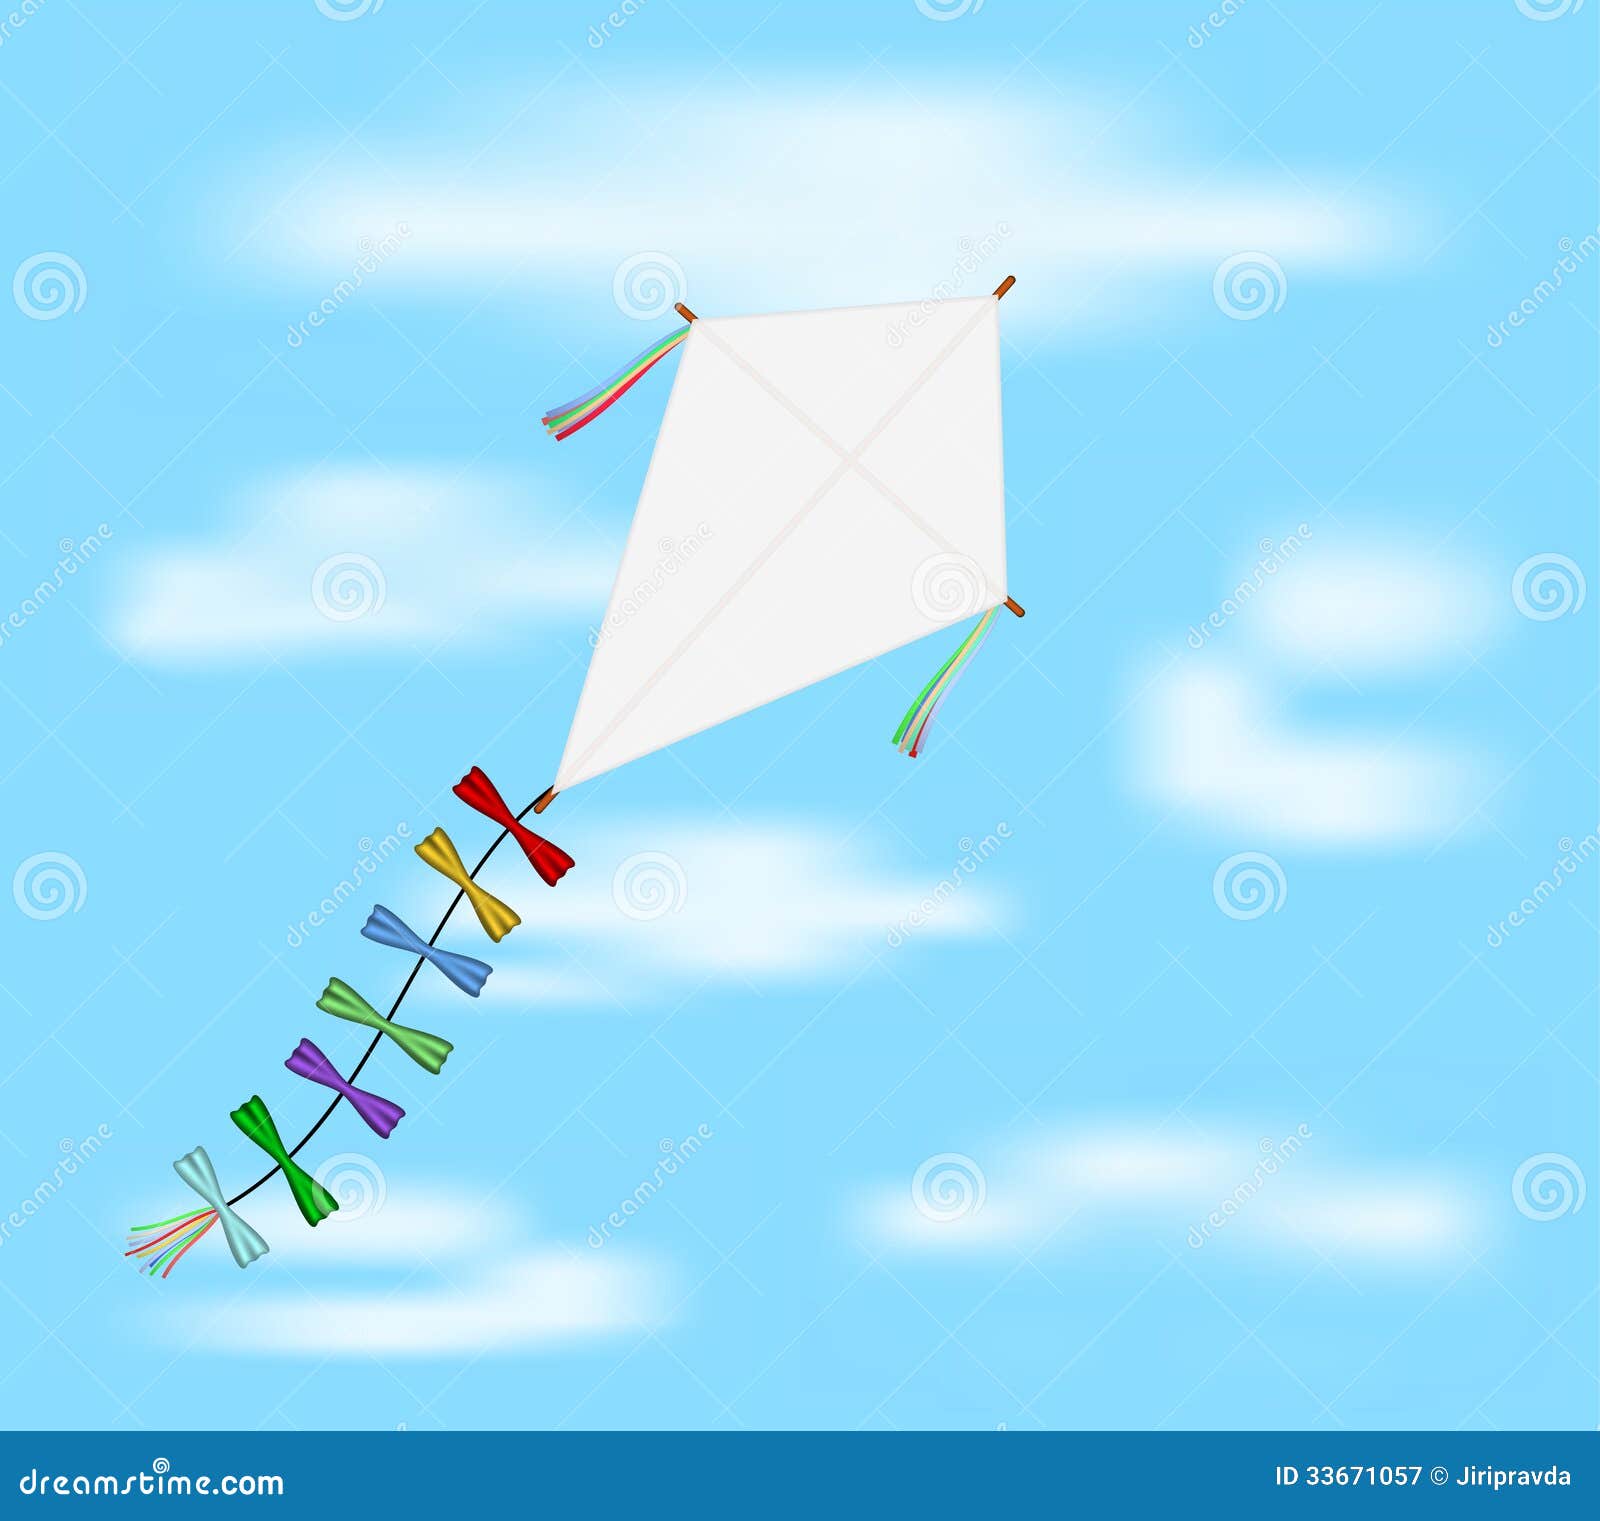 Kite flying essay